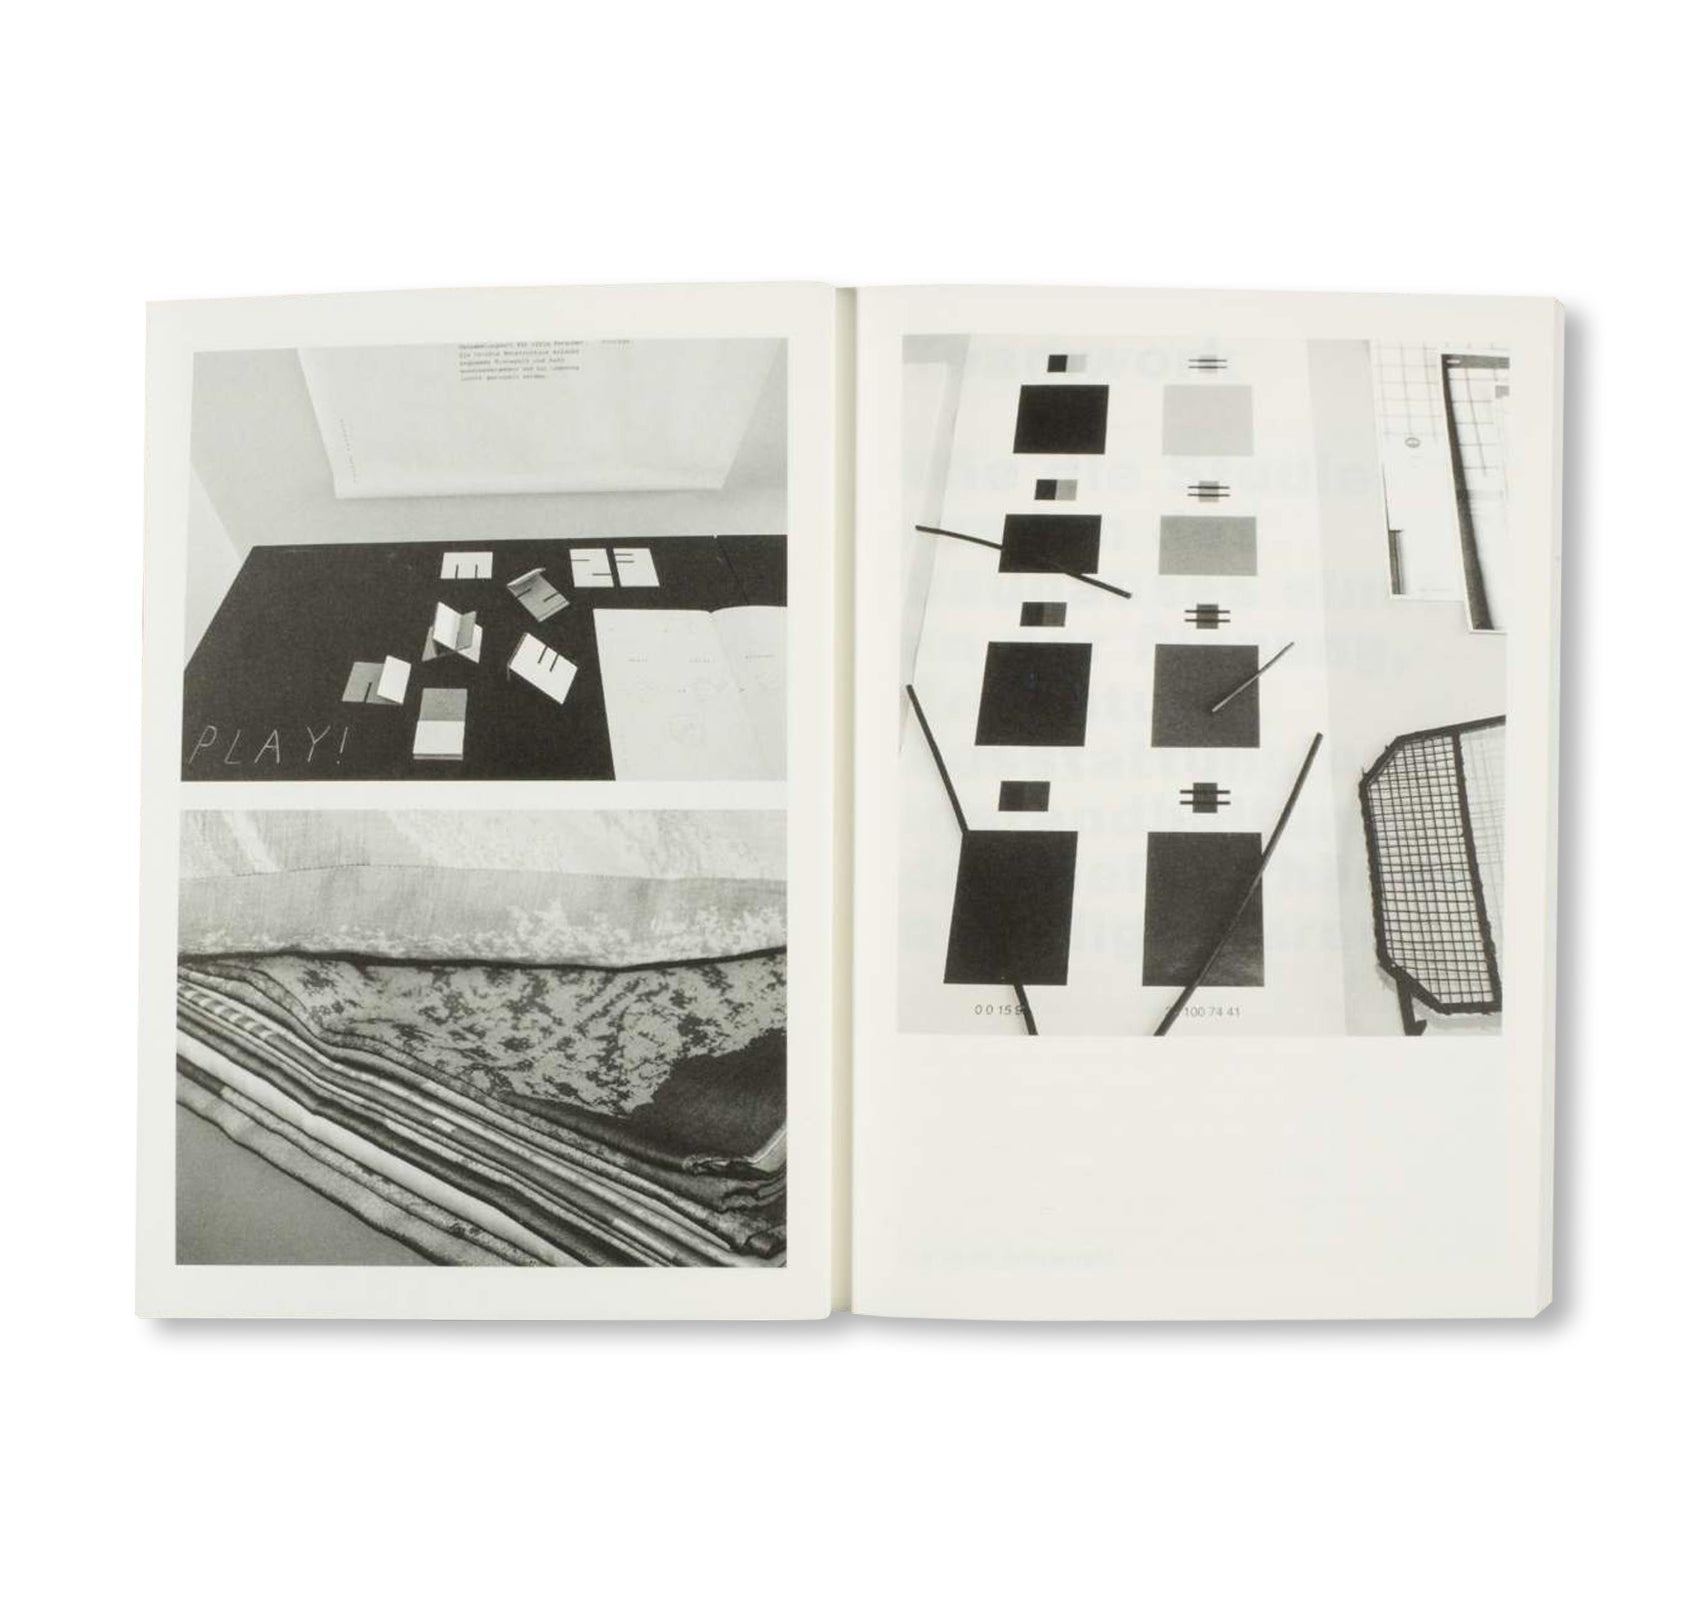 JUNGES DESIGN IN DEN MEISTERHÄUSERN DESSAU - Bauhaus Paperback 17 by Stiftung Bauhaus Dessau [GERMAN EDITION]